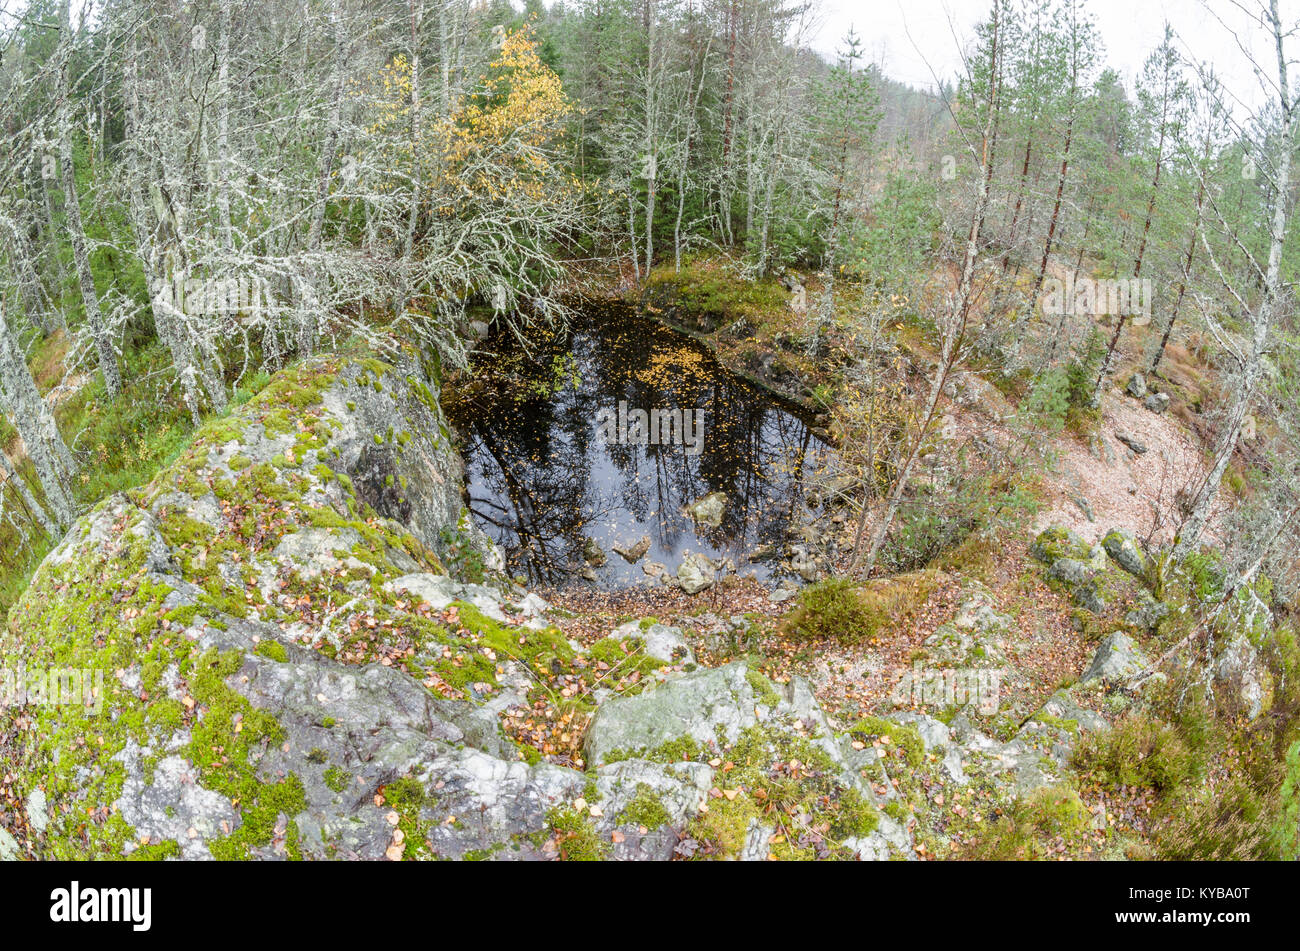 Landsverk 2, Evje Mineralsti. Nel tardo autunno non ci sono le foglie e le reliquie sono visibili nella foresta, quindi è il momento migliore per visitare questo luogo. Foto Stock